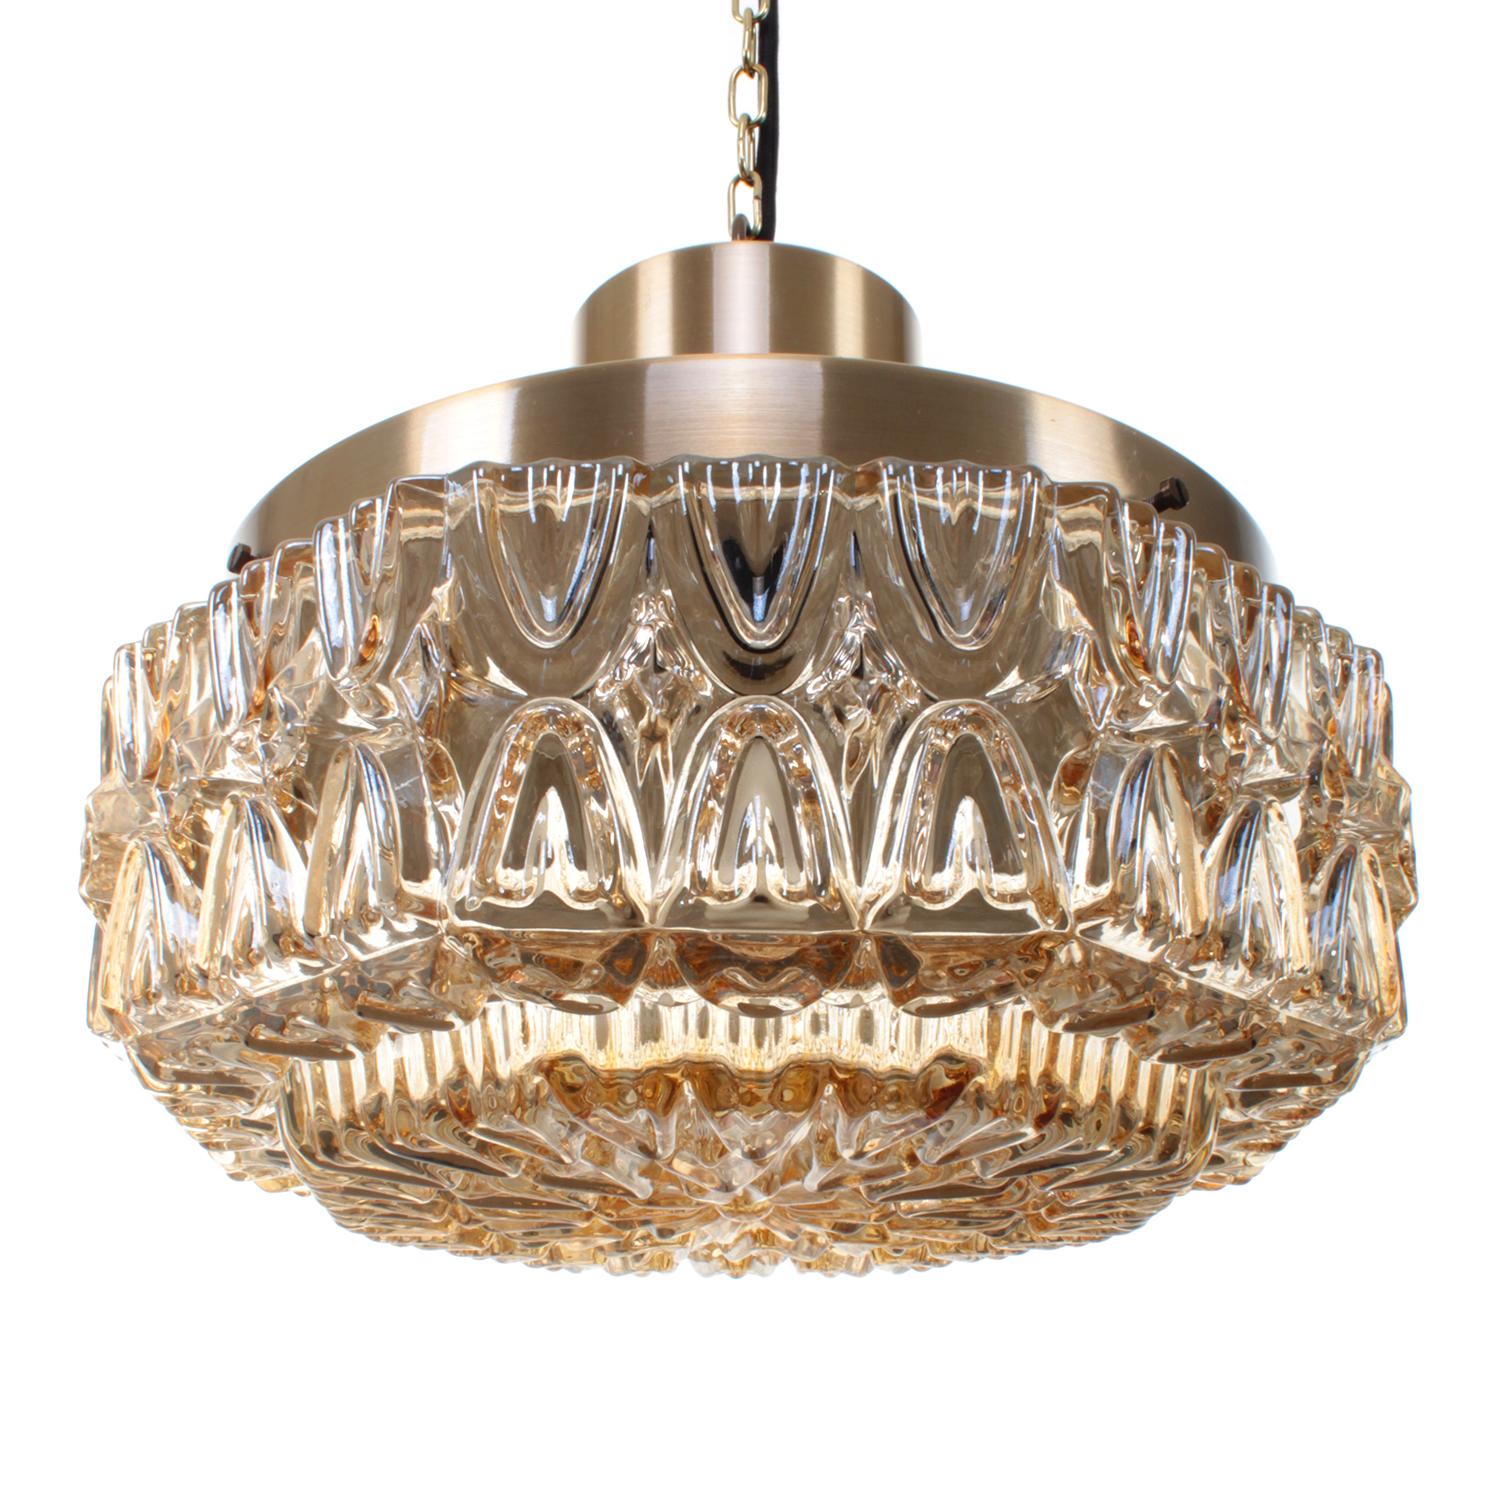 Scandinavian Modern Pressed Glass and Brass, Scandinavian Pendant Light from the 1960s